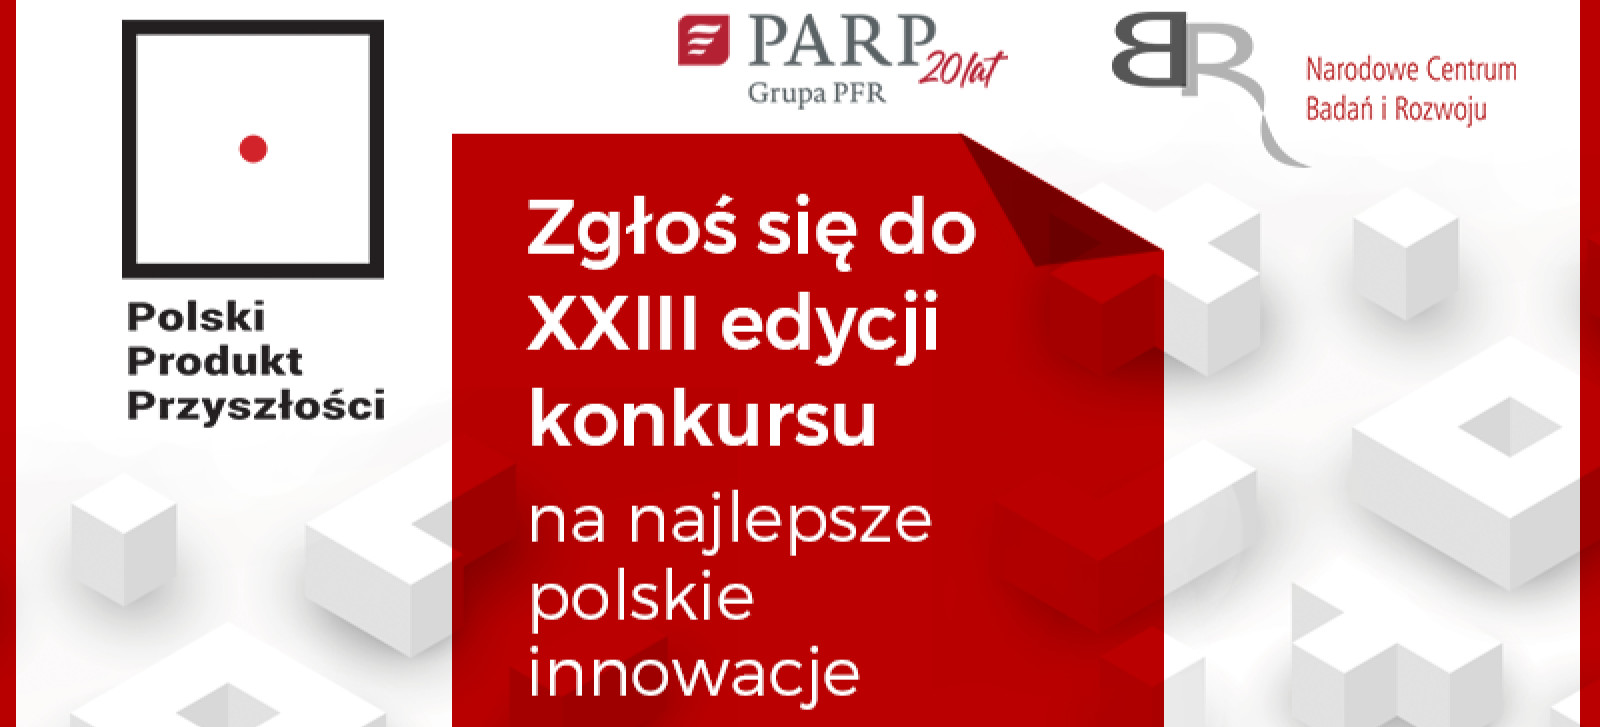 600 tys. zł czeka na Polskie Produkty Przyszłości